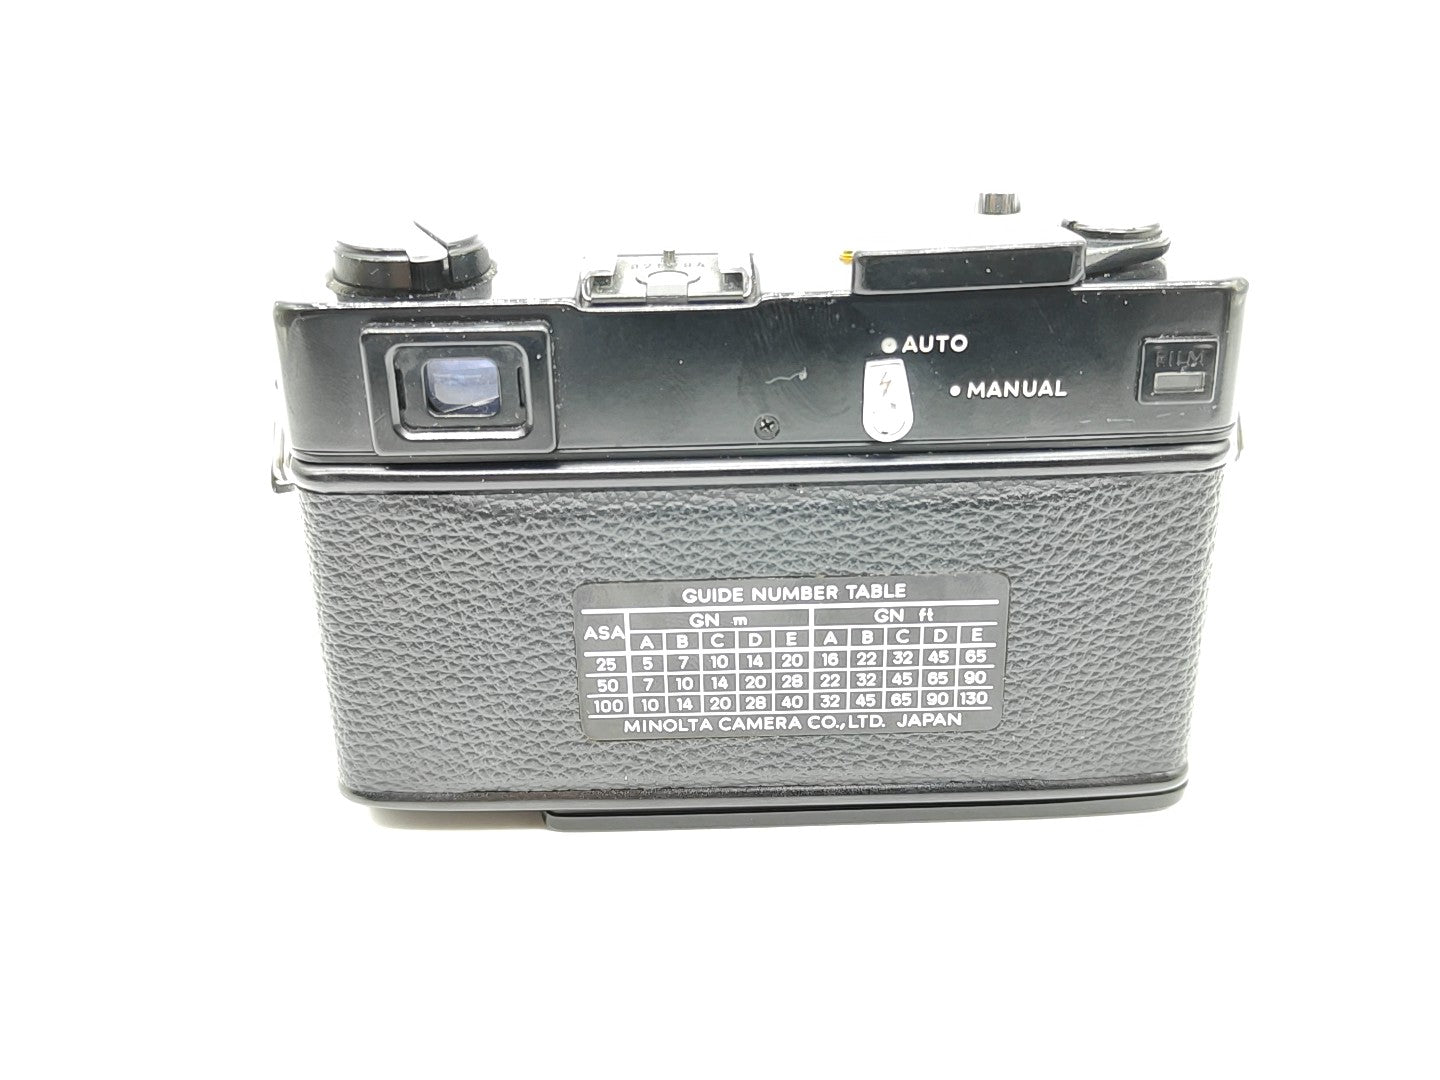 Minolta HiMatic E rangefinder camera (black)